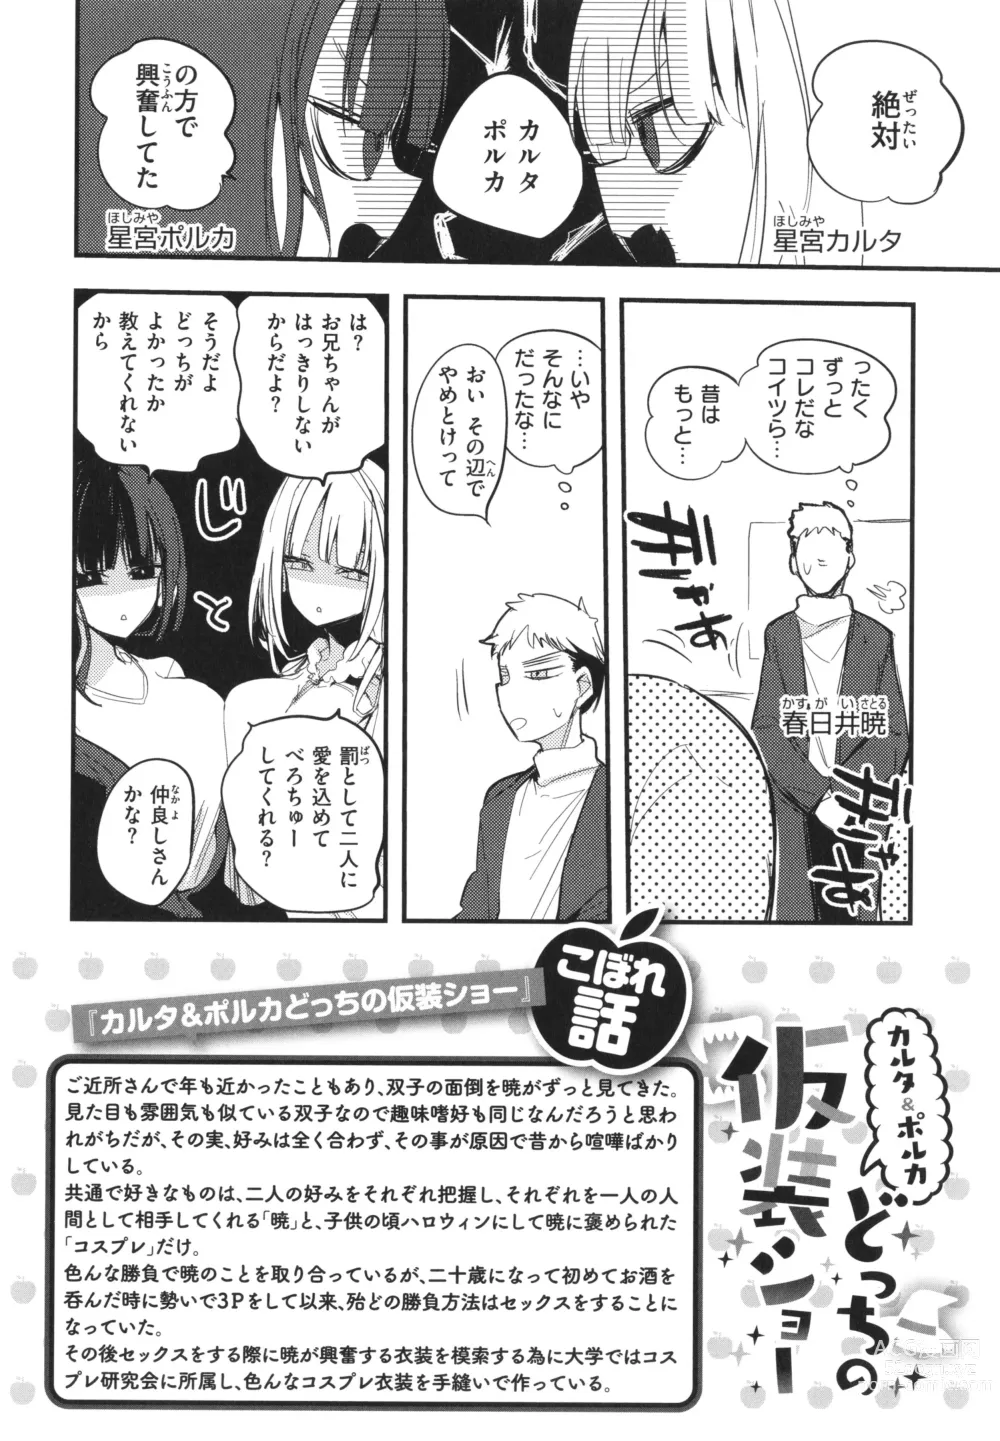 Page 154 of manga New Tawawa Paradise